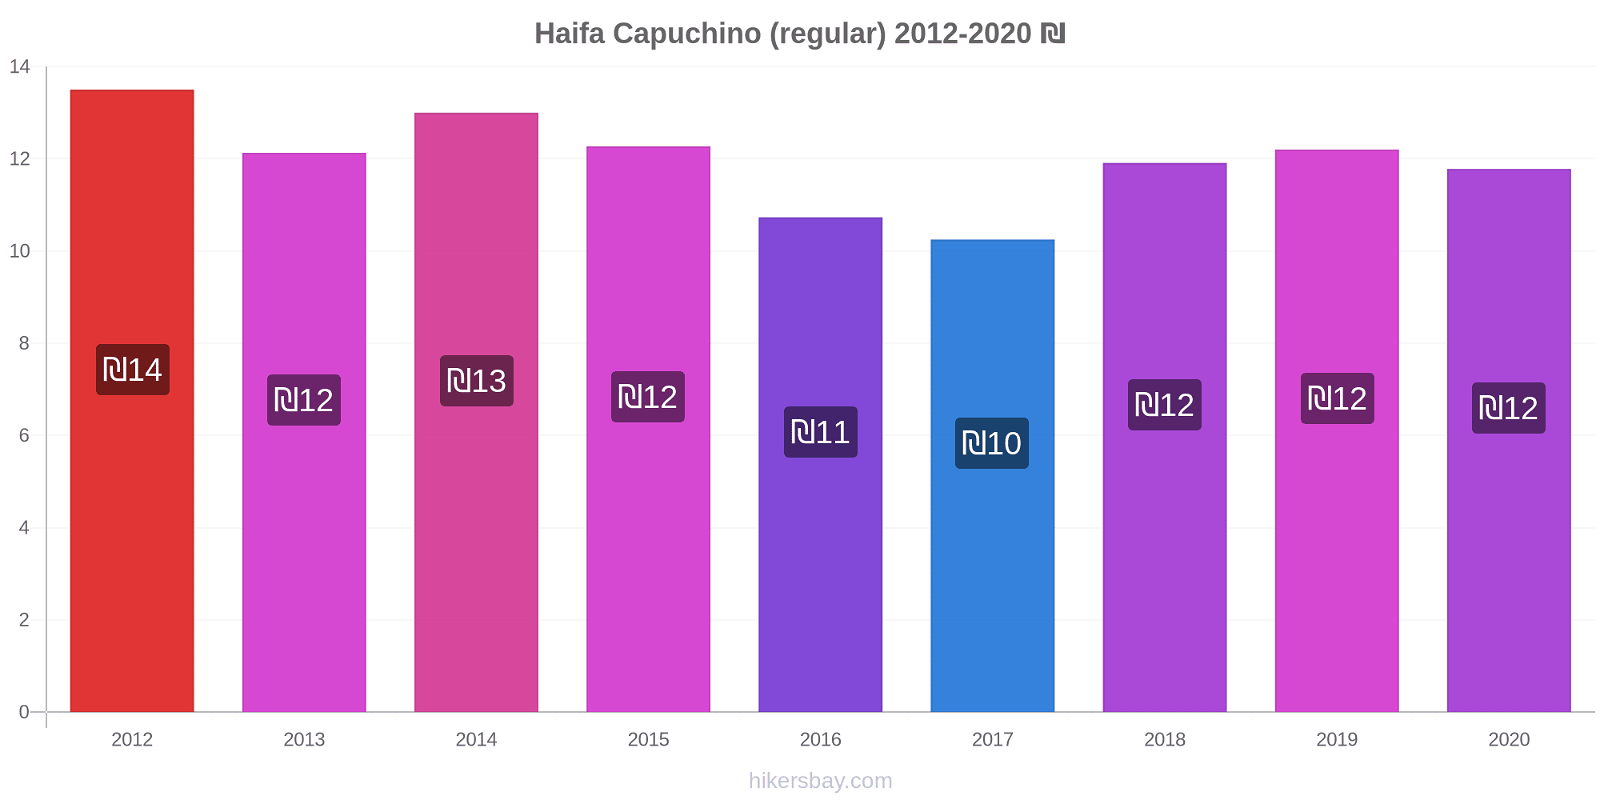 Haifa cambios de precios Capuchino (regular) hikersbay.com